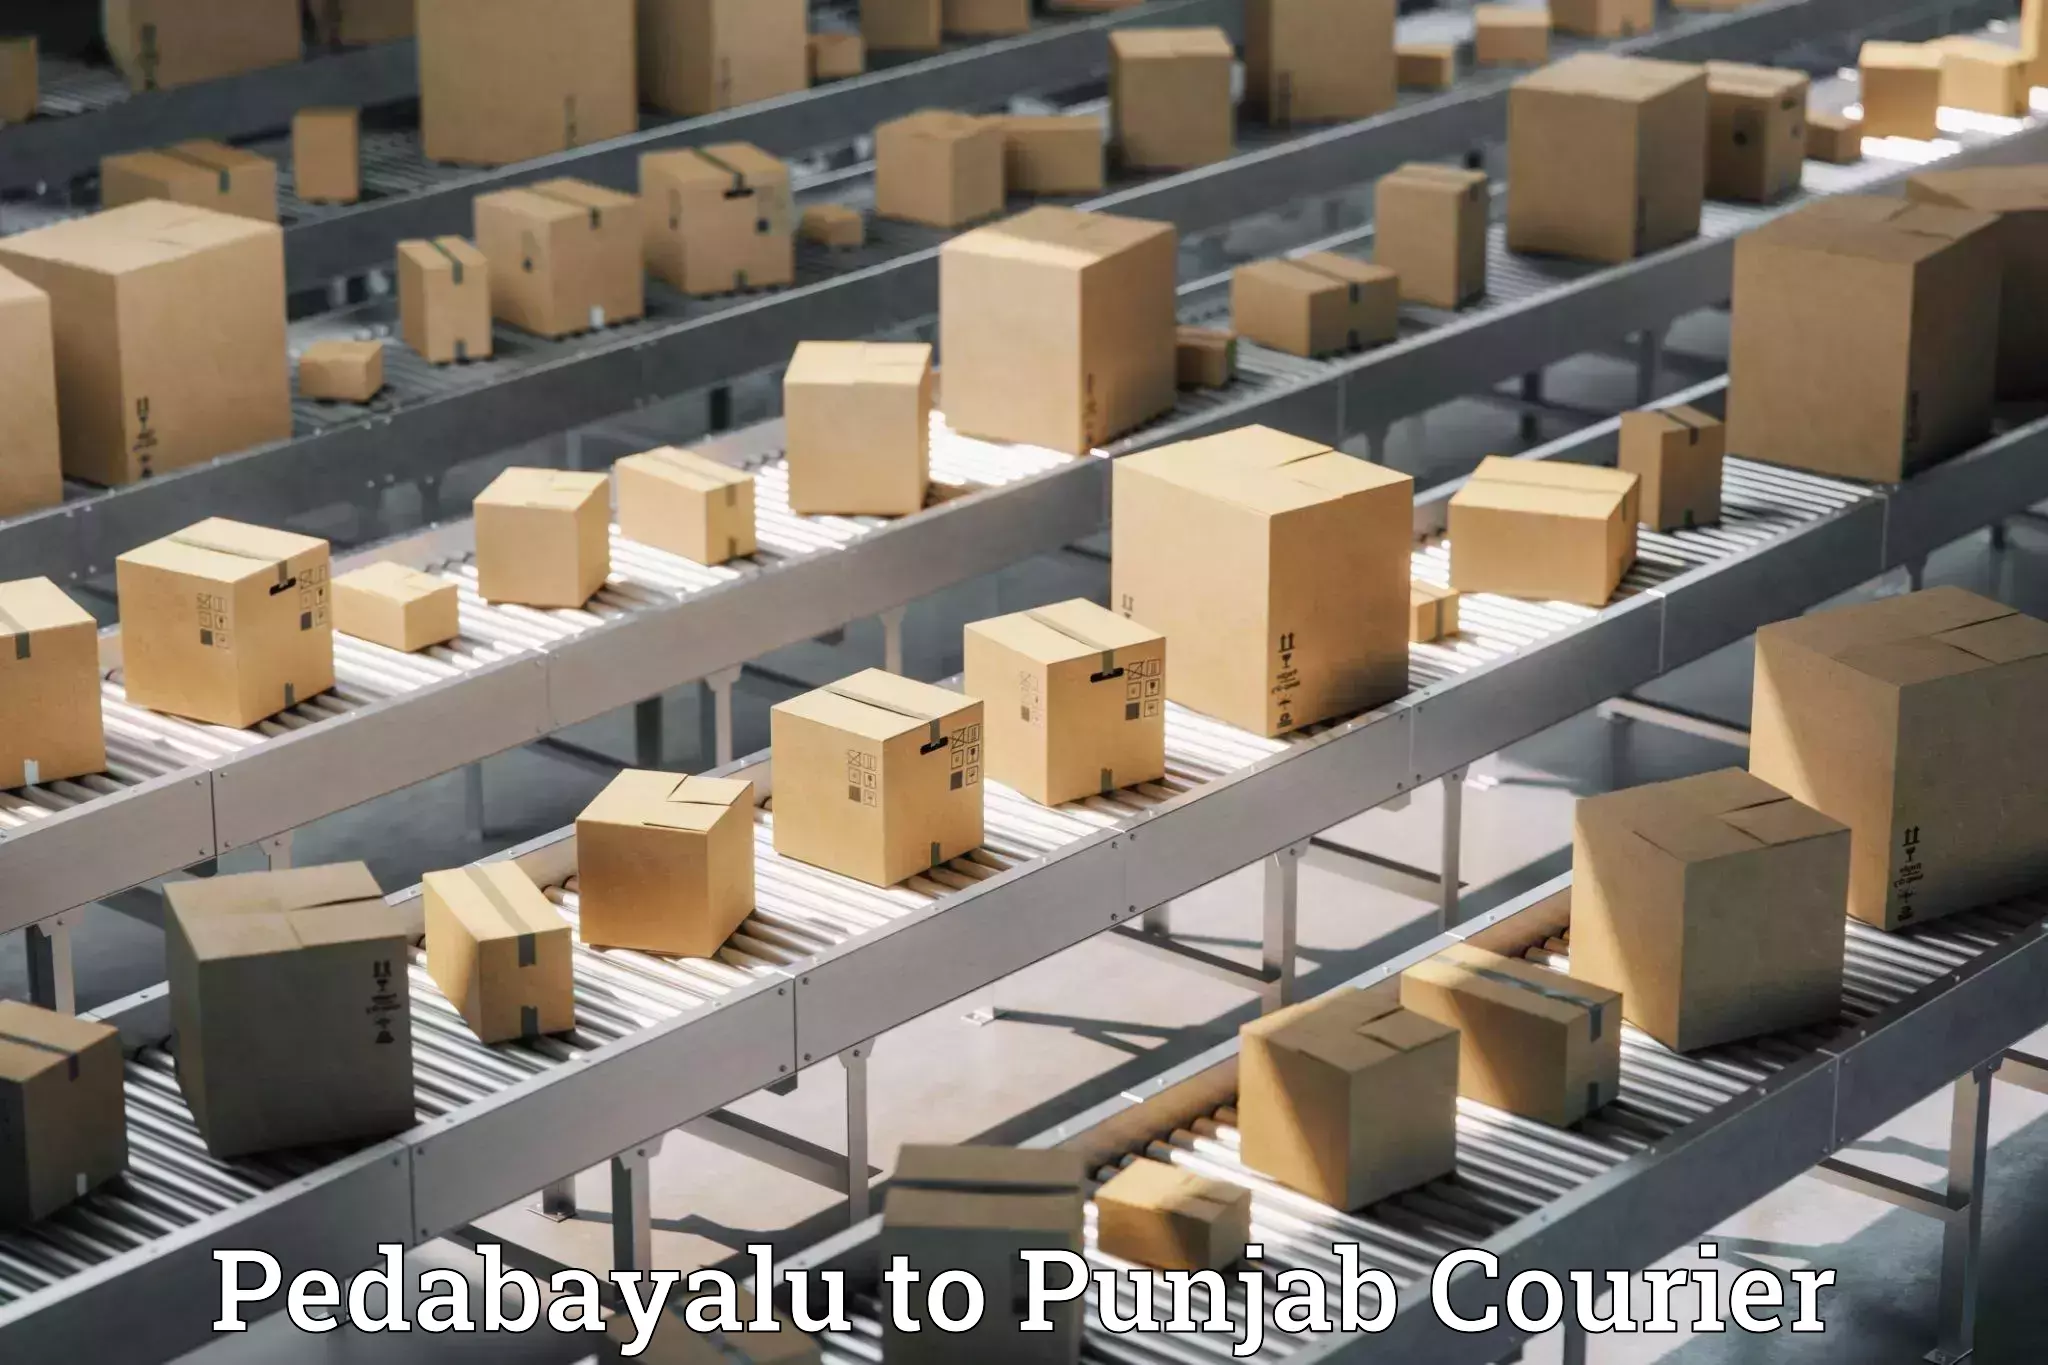 On-demand shipping options Pedabayalu to Central University of Punjab Bathinda